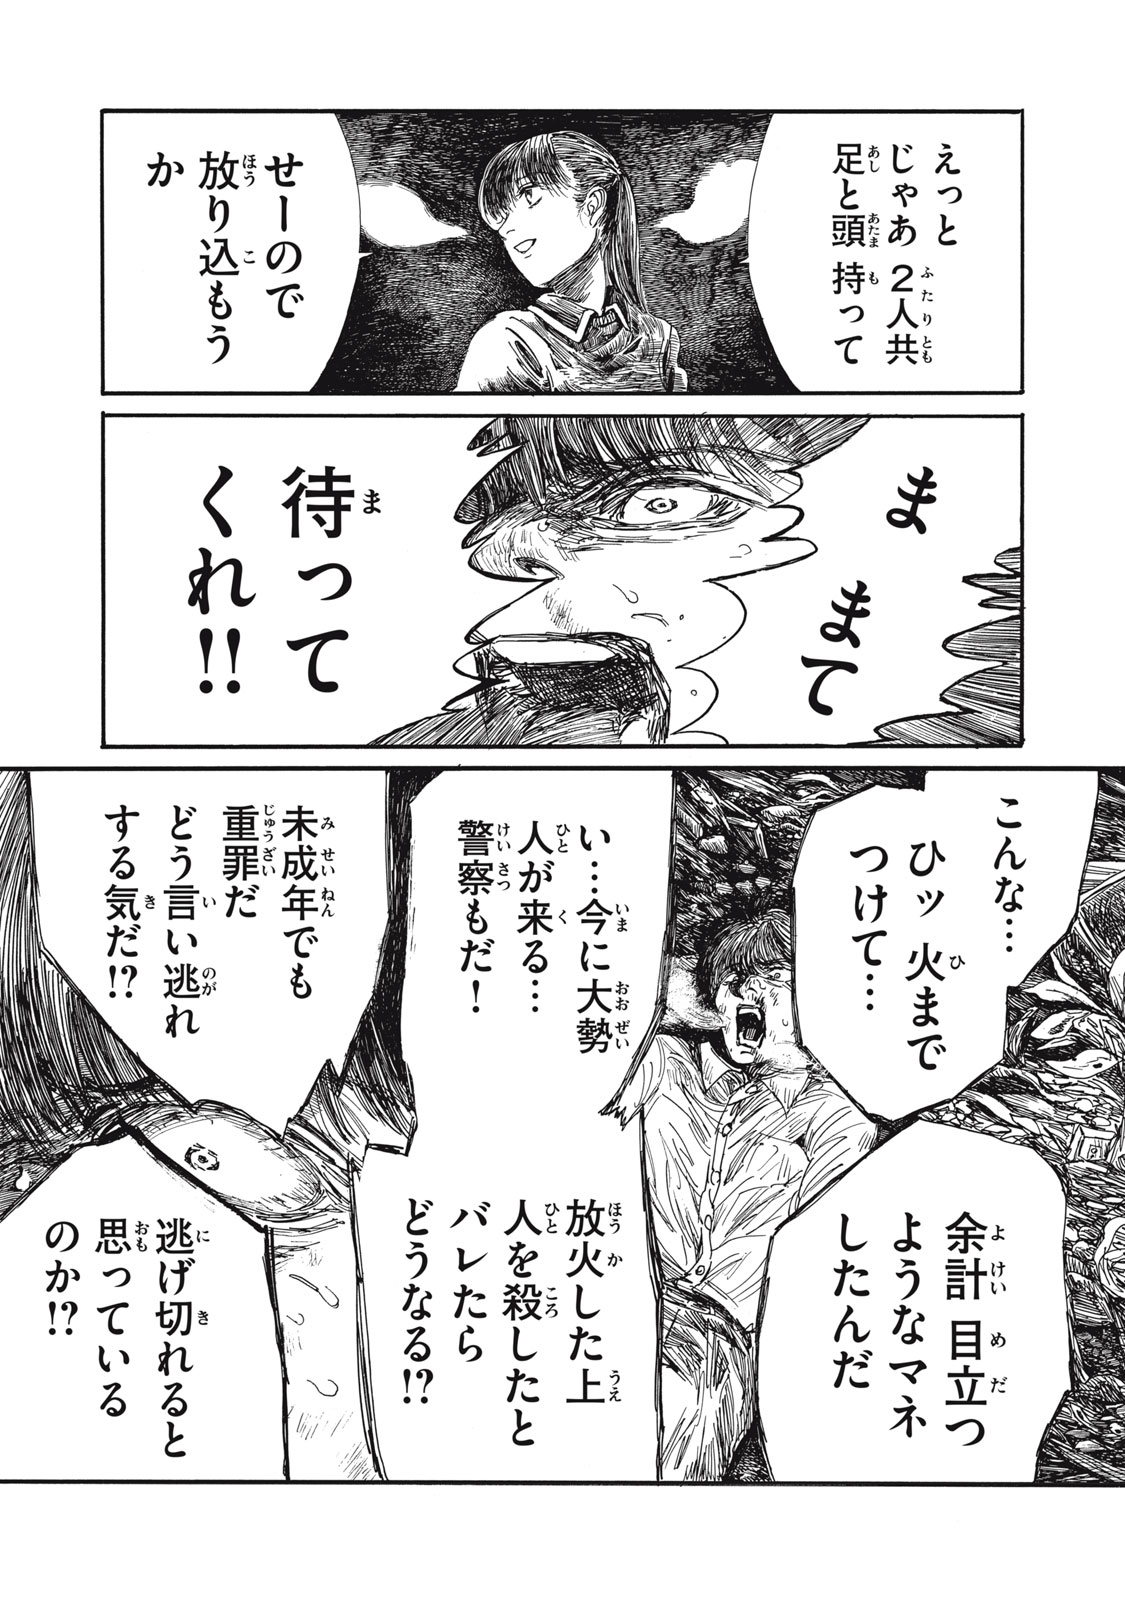 Watashi no Hara no Naka no Bakemono - Chapter 28 - Page 1